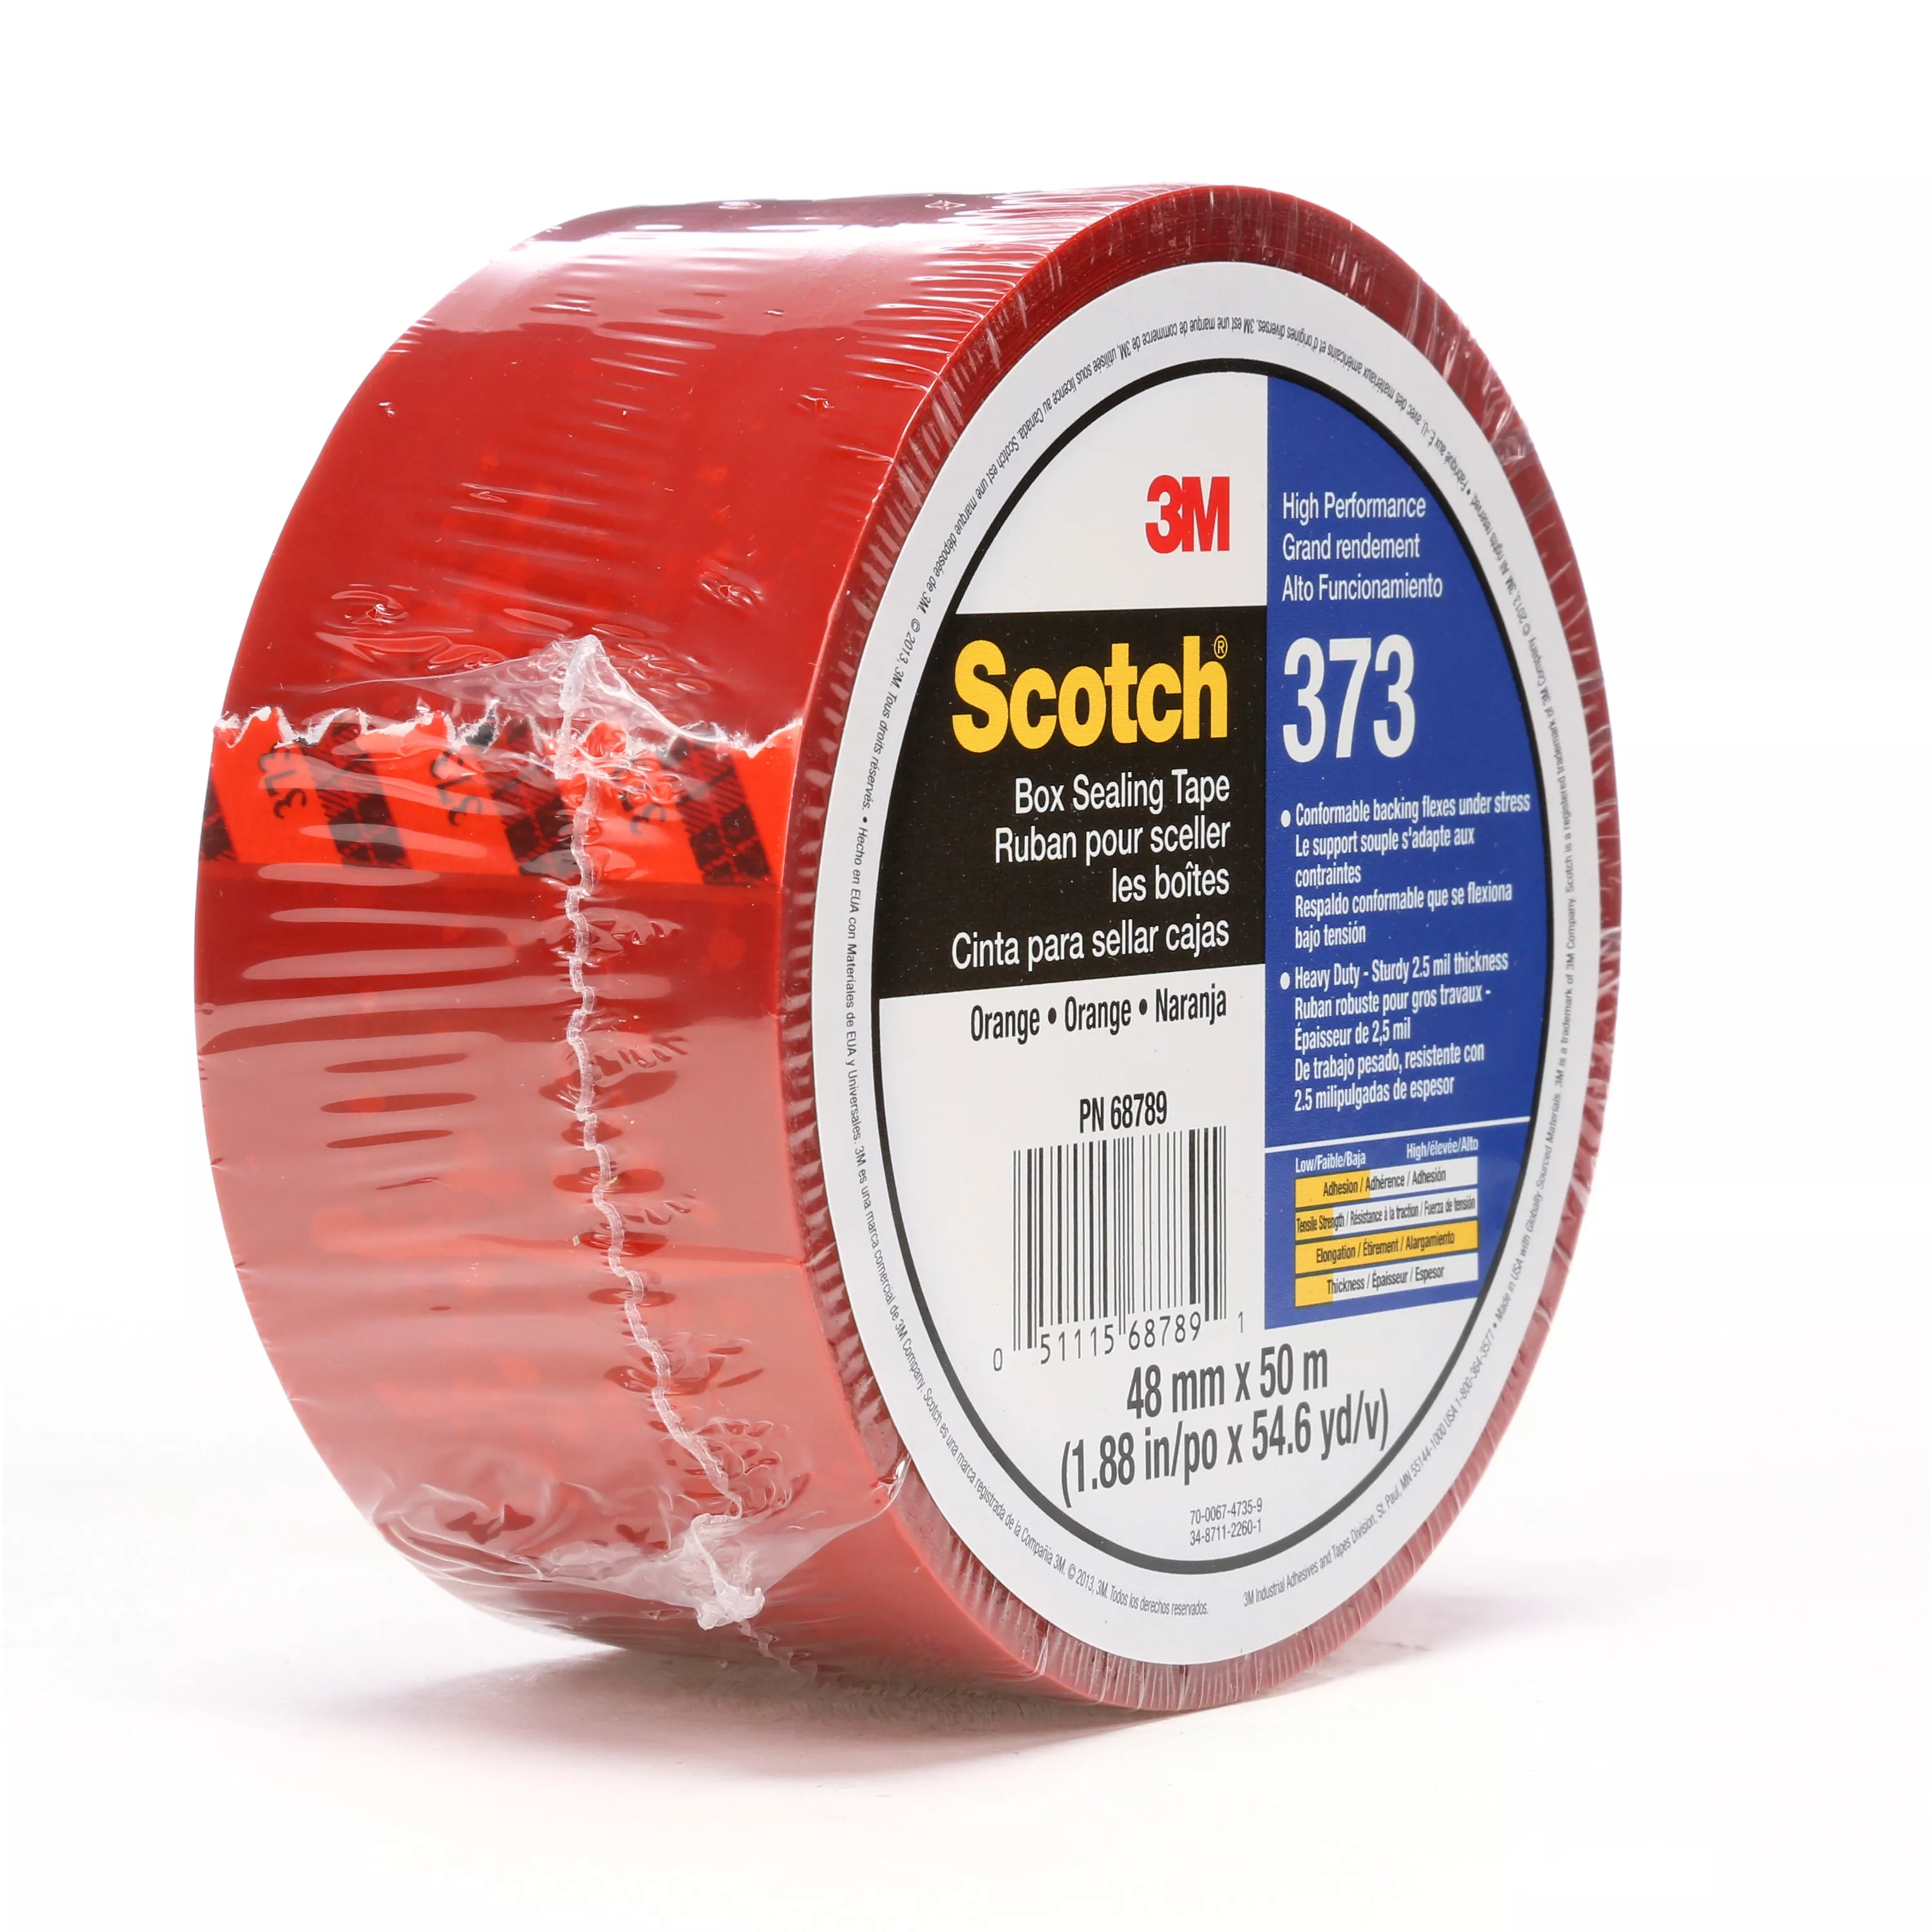 SKU 7010374967 | Scotch® Box Sealing Tape 373